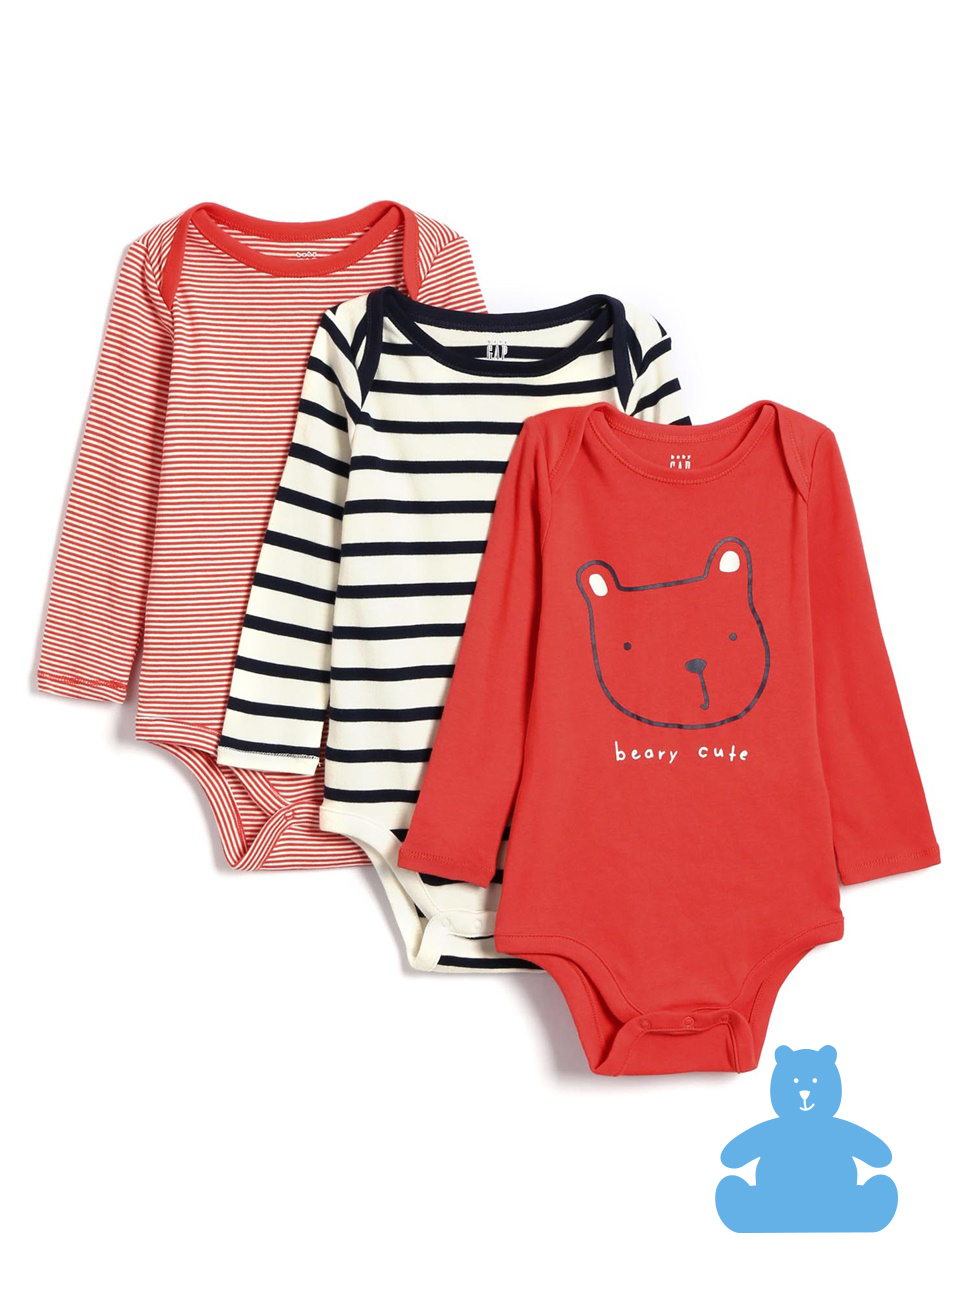 嬰兒裝|刺繡包屁衣三件組 布萊納系列-朱紅色